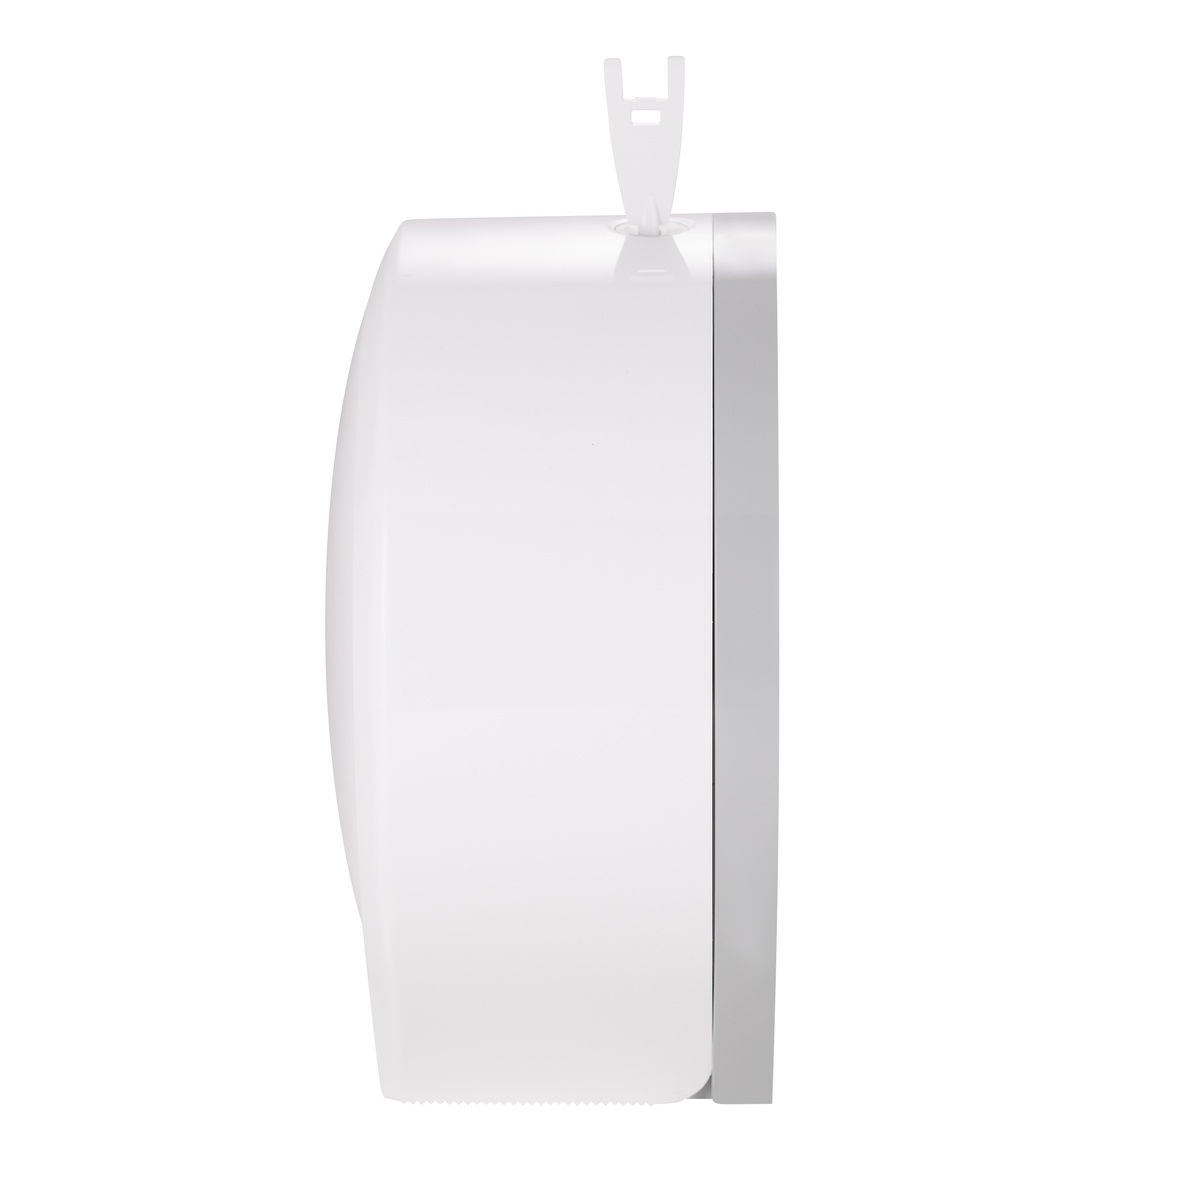 Диспенсер для туалетной бумаги Q-TAP Drzak papiru белый пластик QTDP100WP